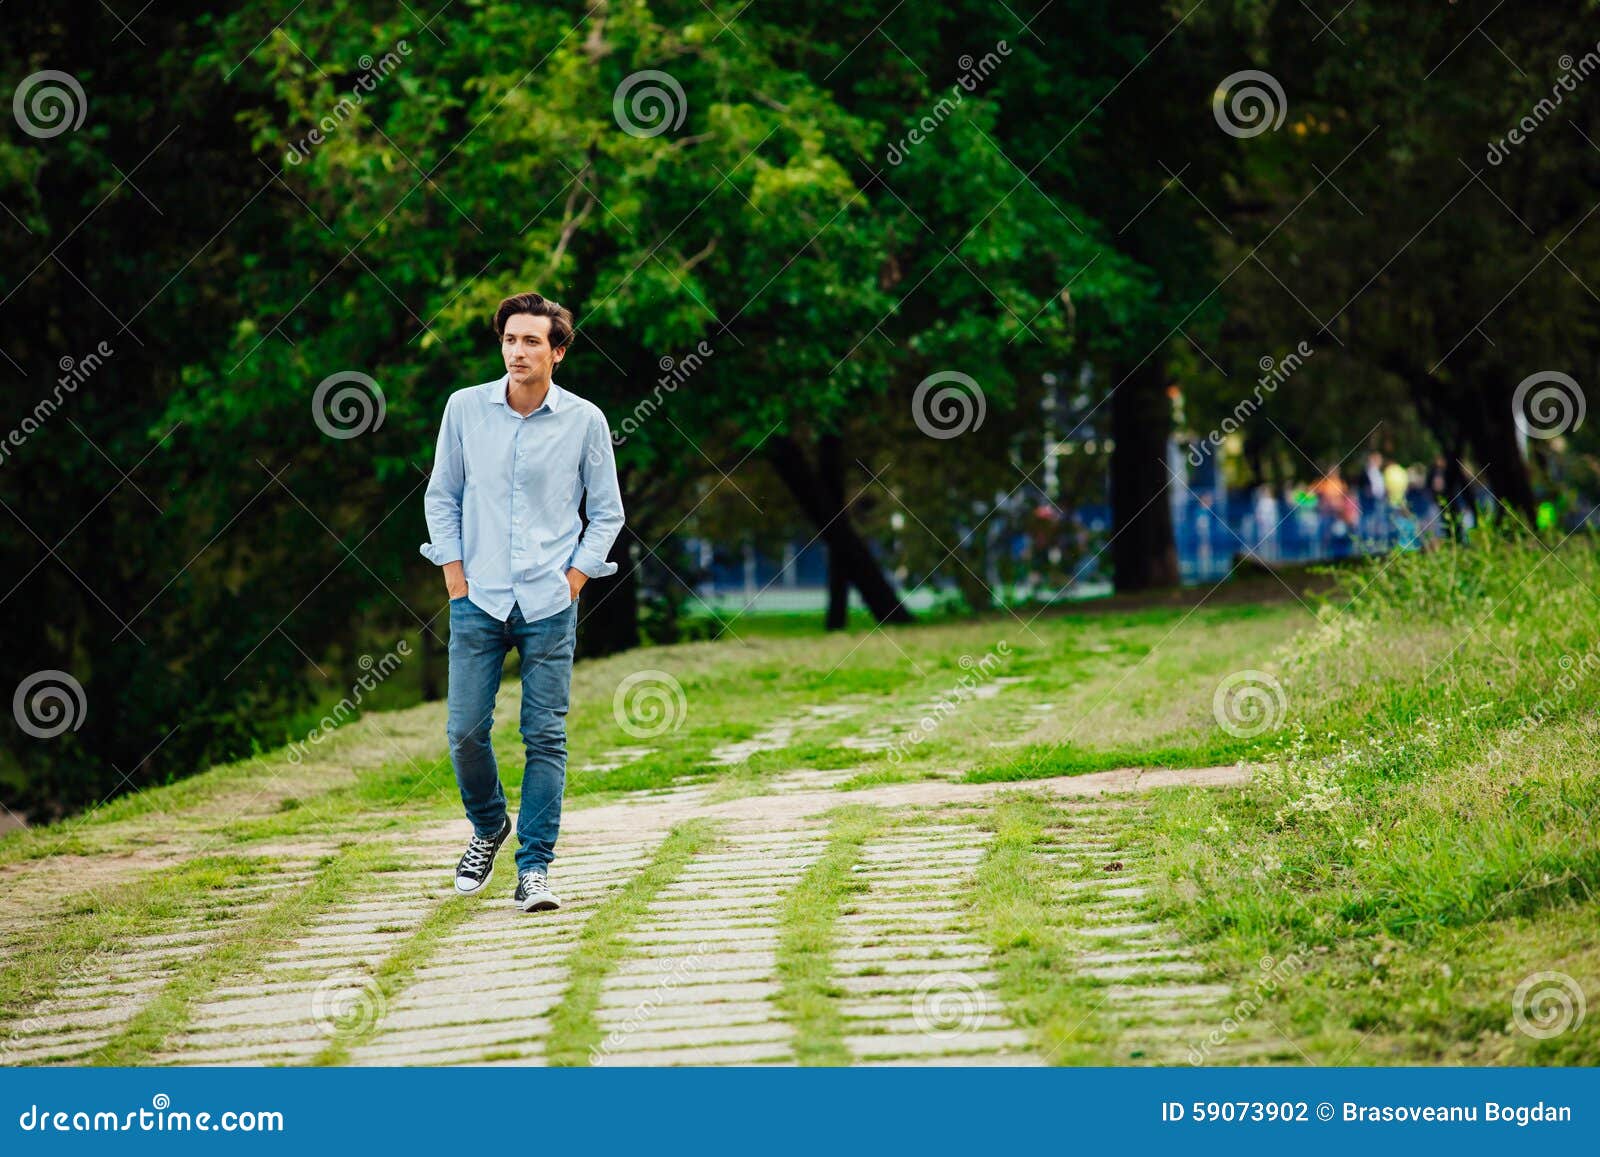 Гулять сходите. Люди гуляют в парке. Мужчина гуляет в парке. Люди гуляют по парку. Прогулка в парке парень.